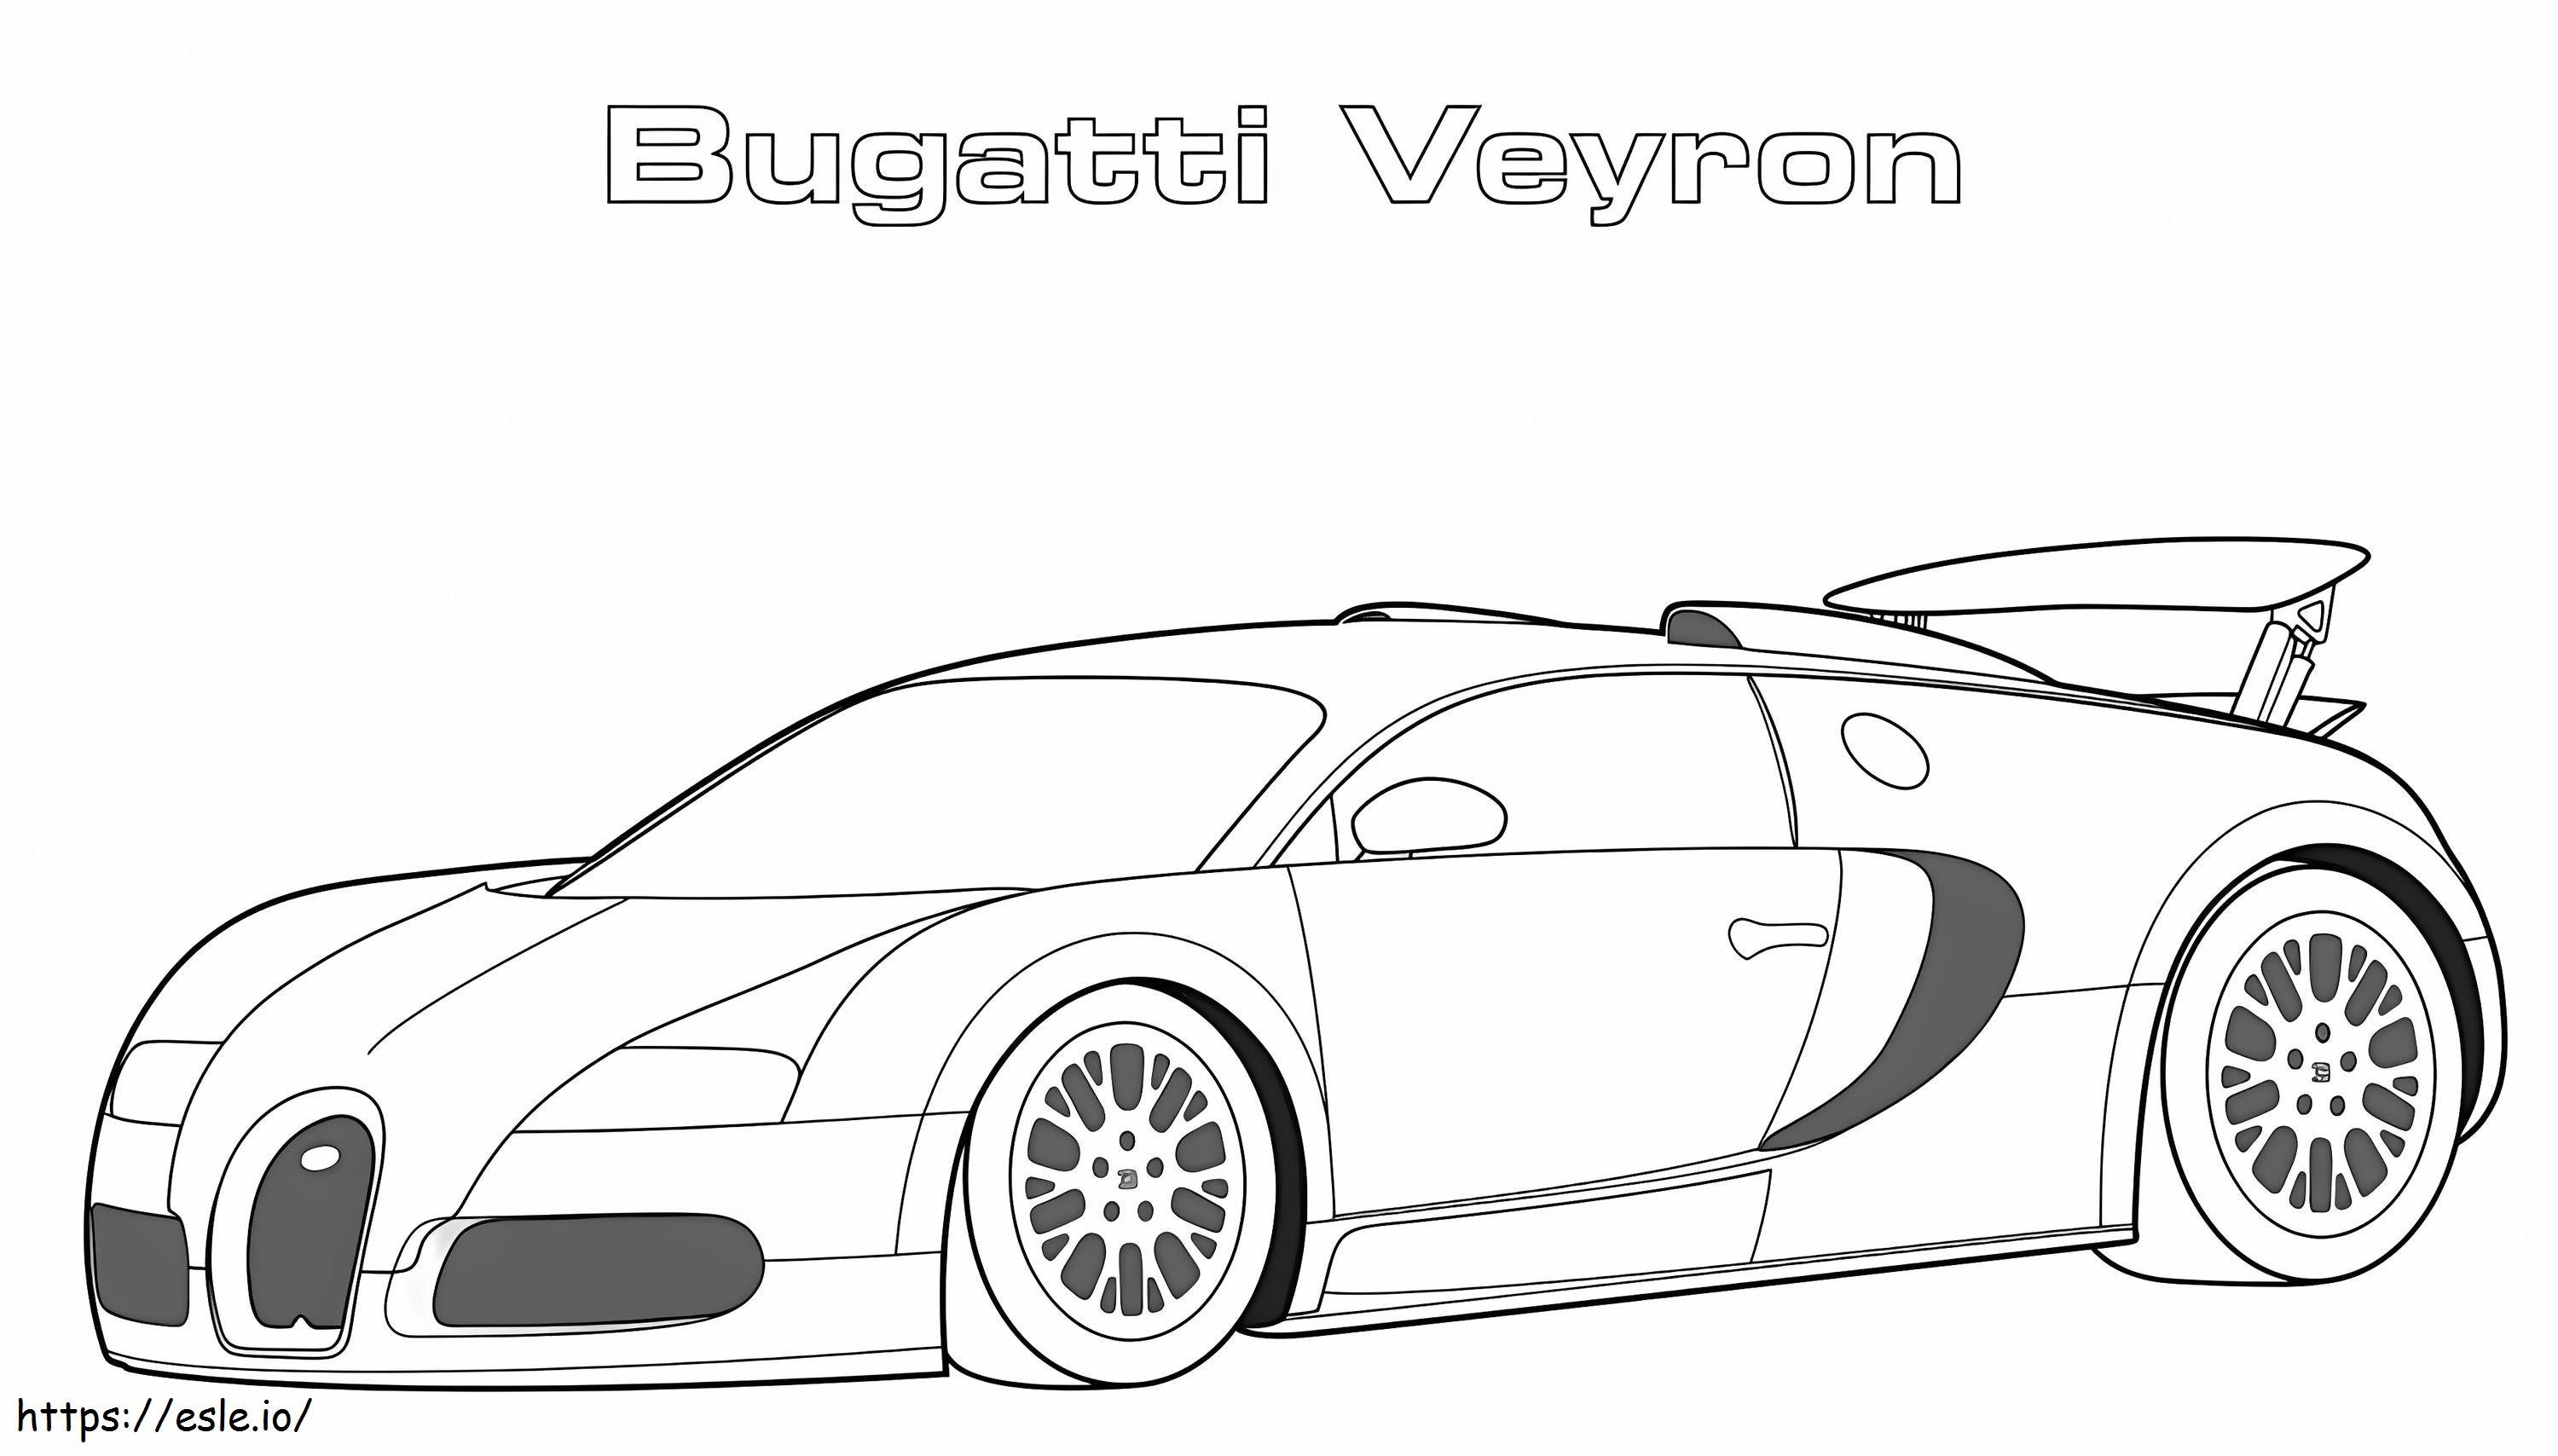 1560417741 Bugatti Veyron A4 para colorear